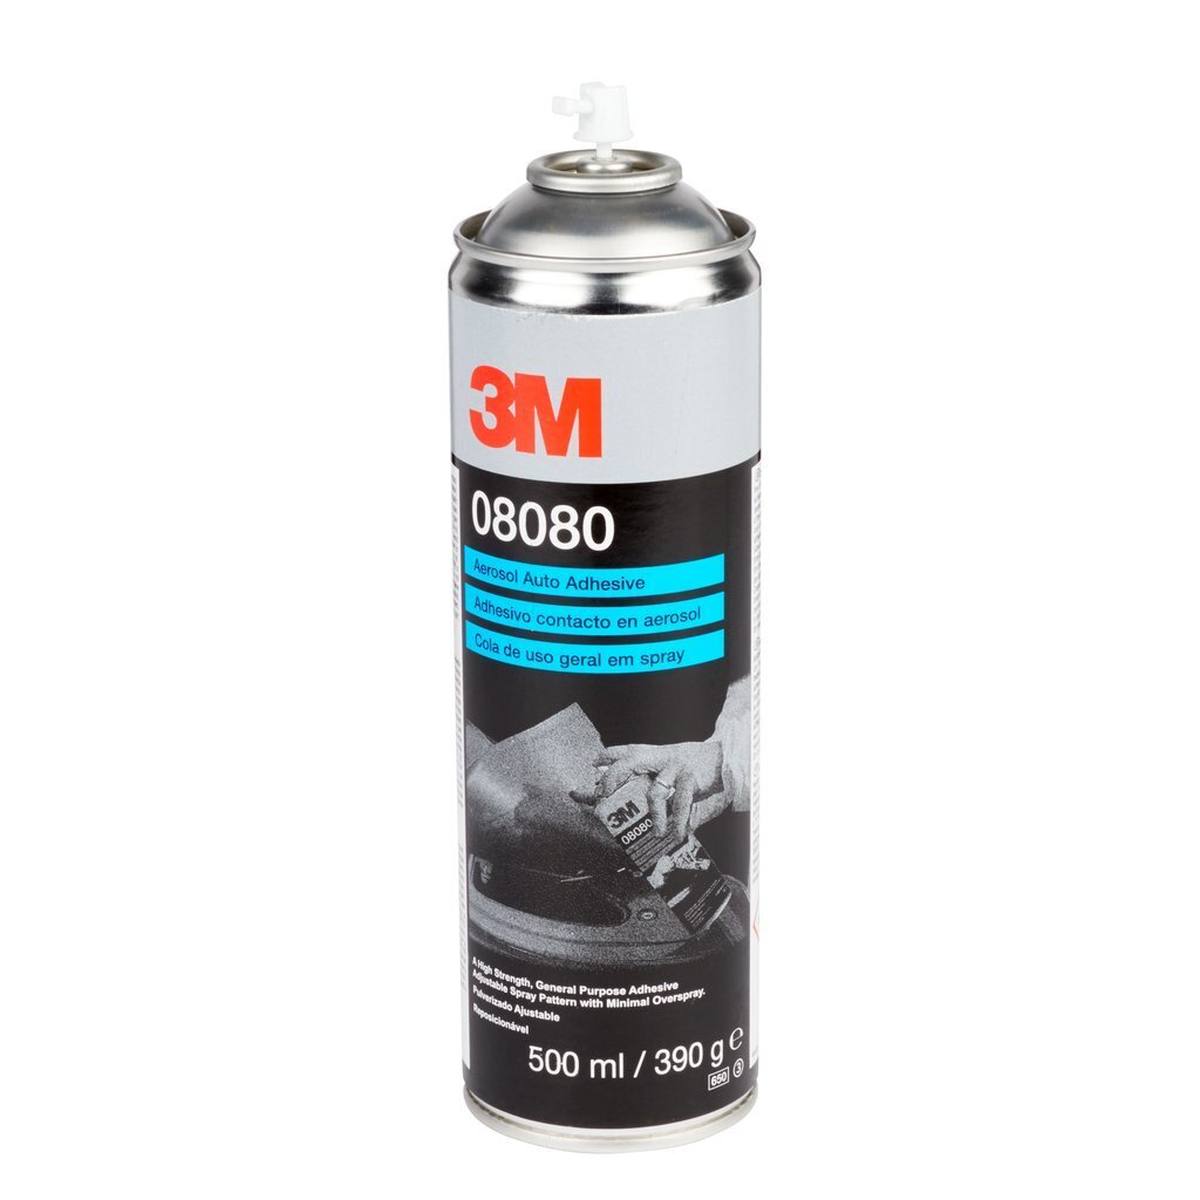 3M Spray adhesivo para carrocerías, 500 ml #08080